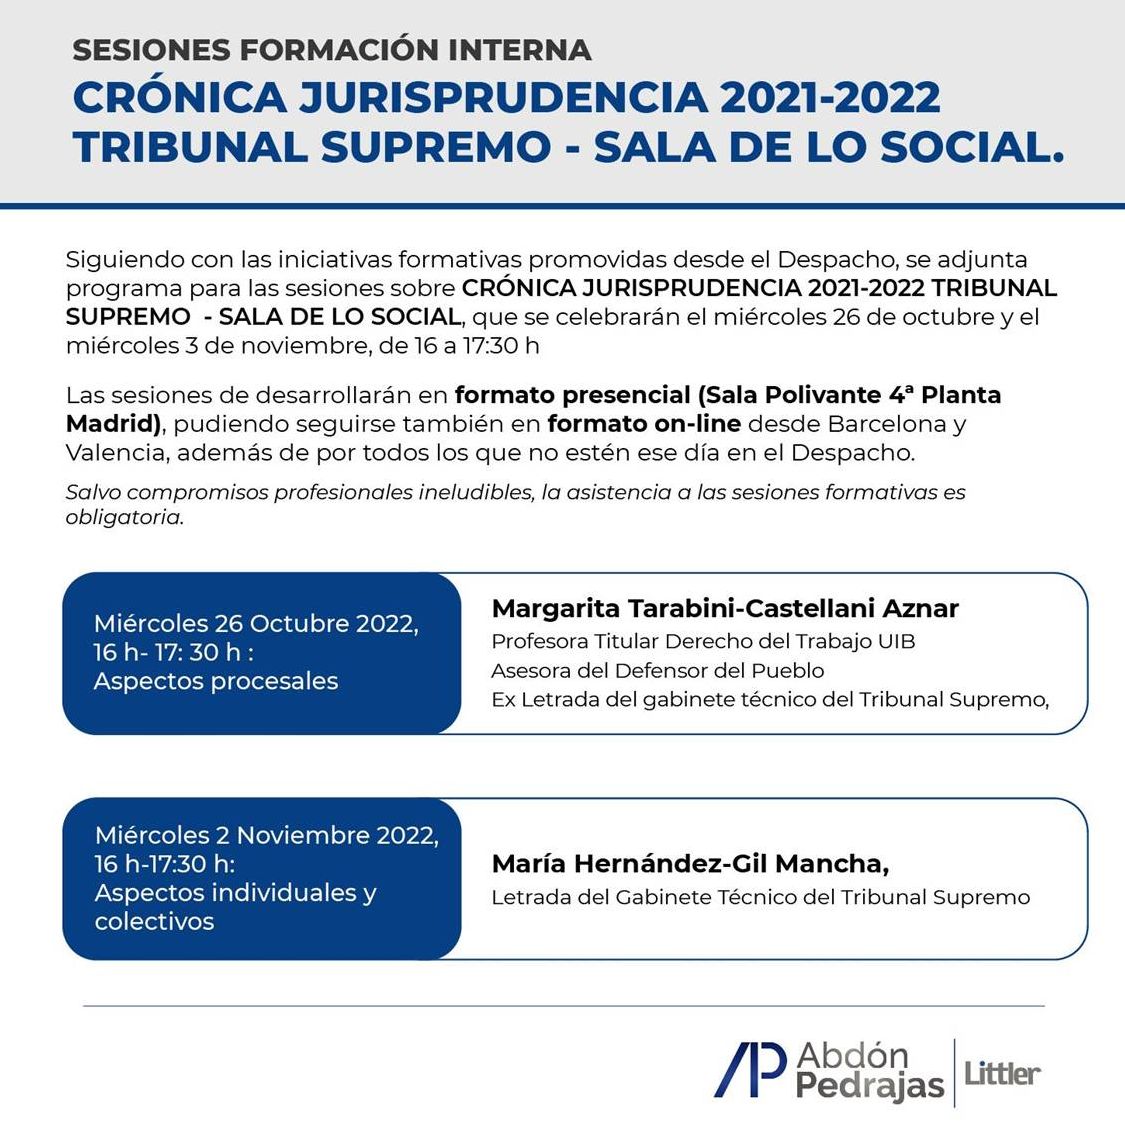 SESIONES FORMACIÓN INTERNA - CRÓNICA JURISPRUDENCIA 2021-2022 TRIBUNAL SUPREMO - SALA DE LO SOCIAL